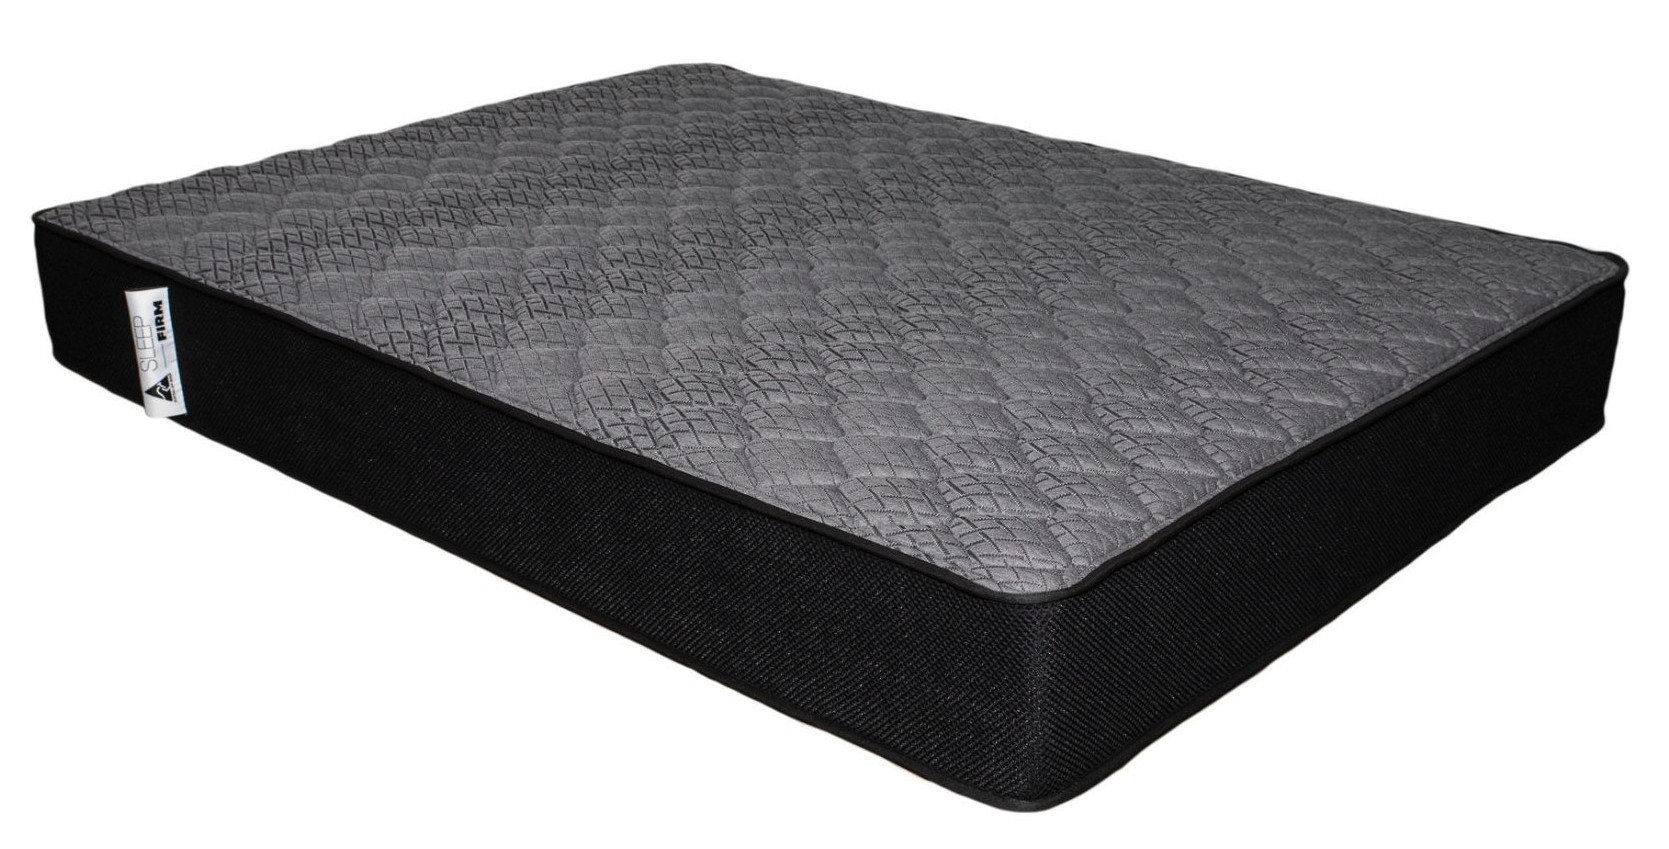 mattress firm sleep happy guarantee